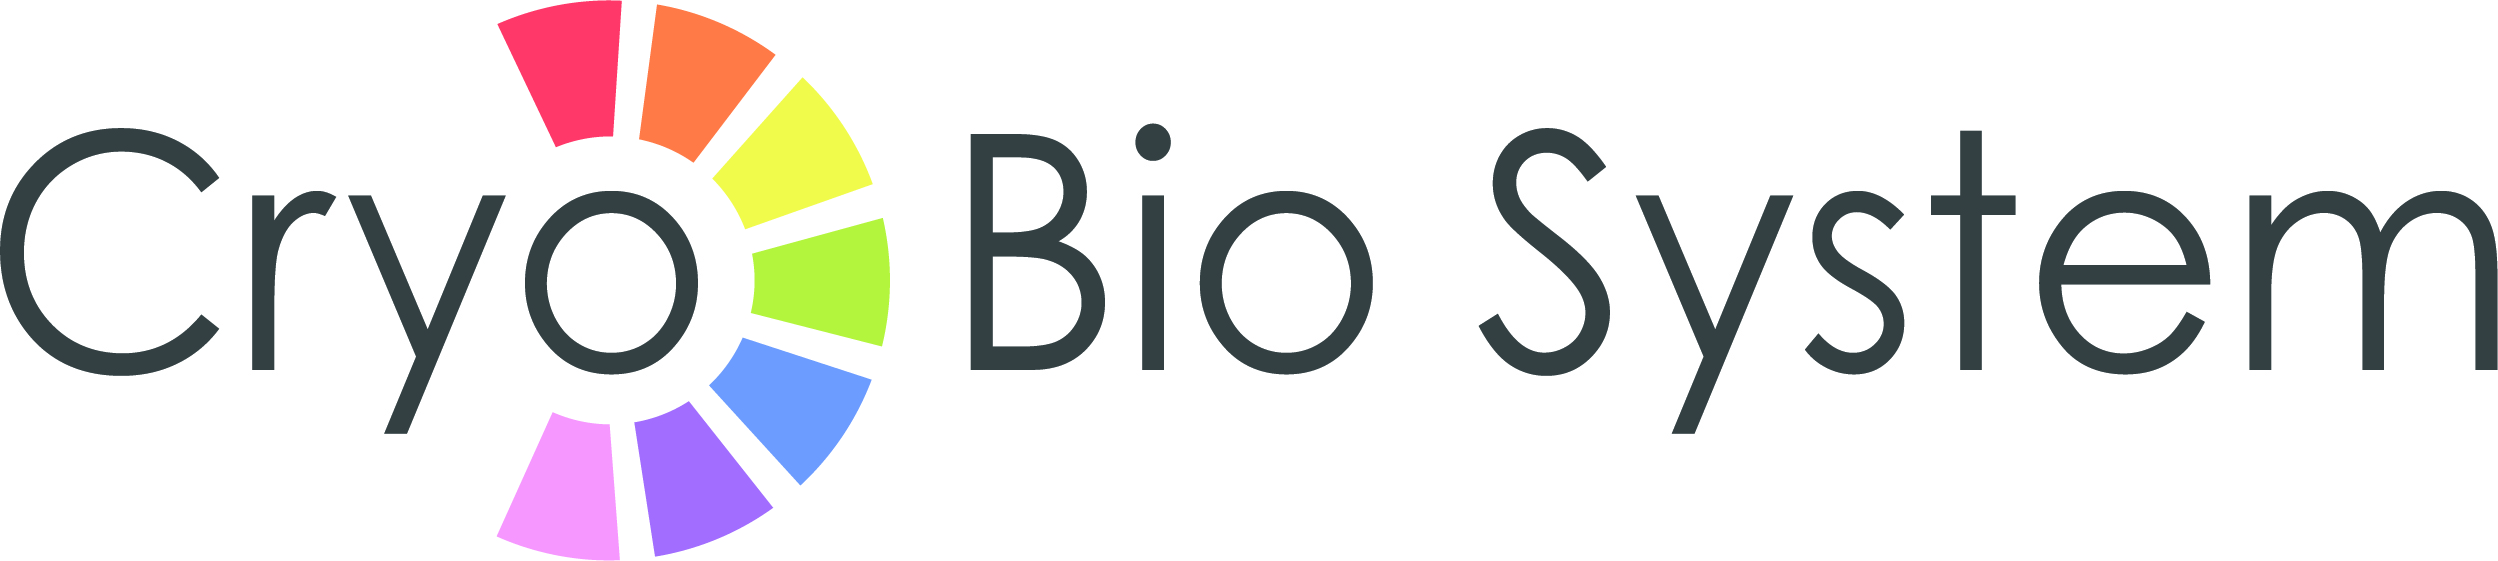 Cryo Bio System